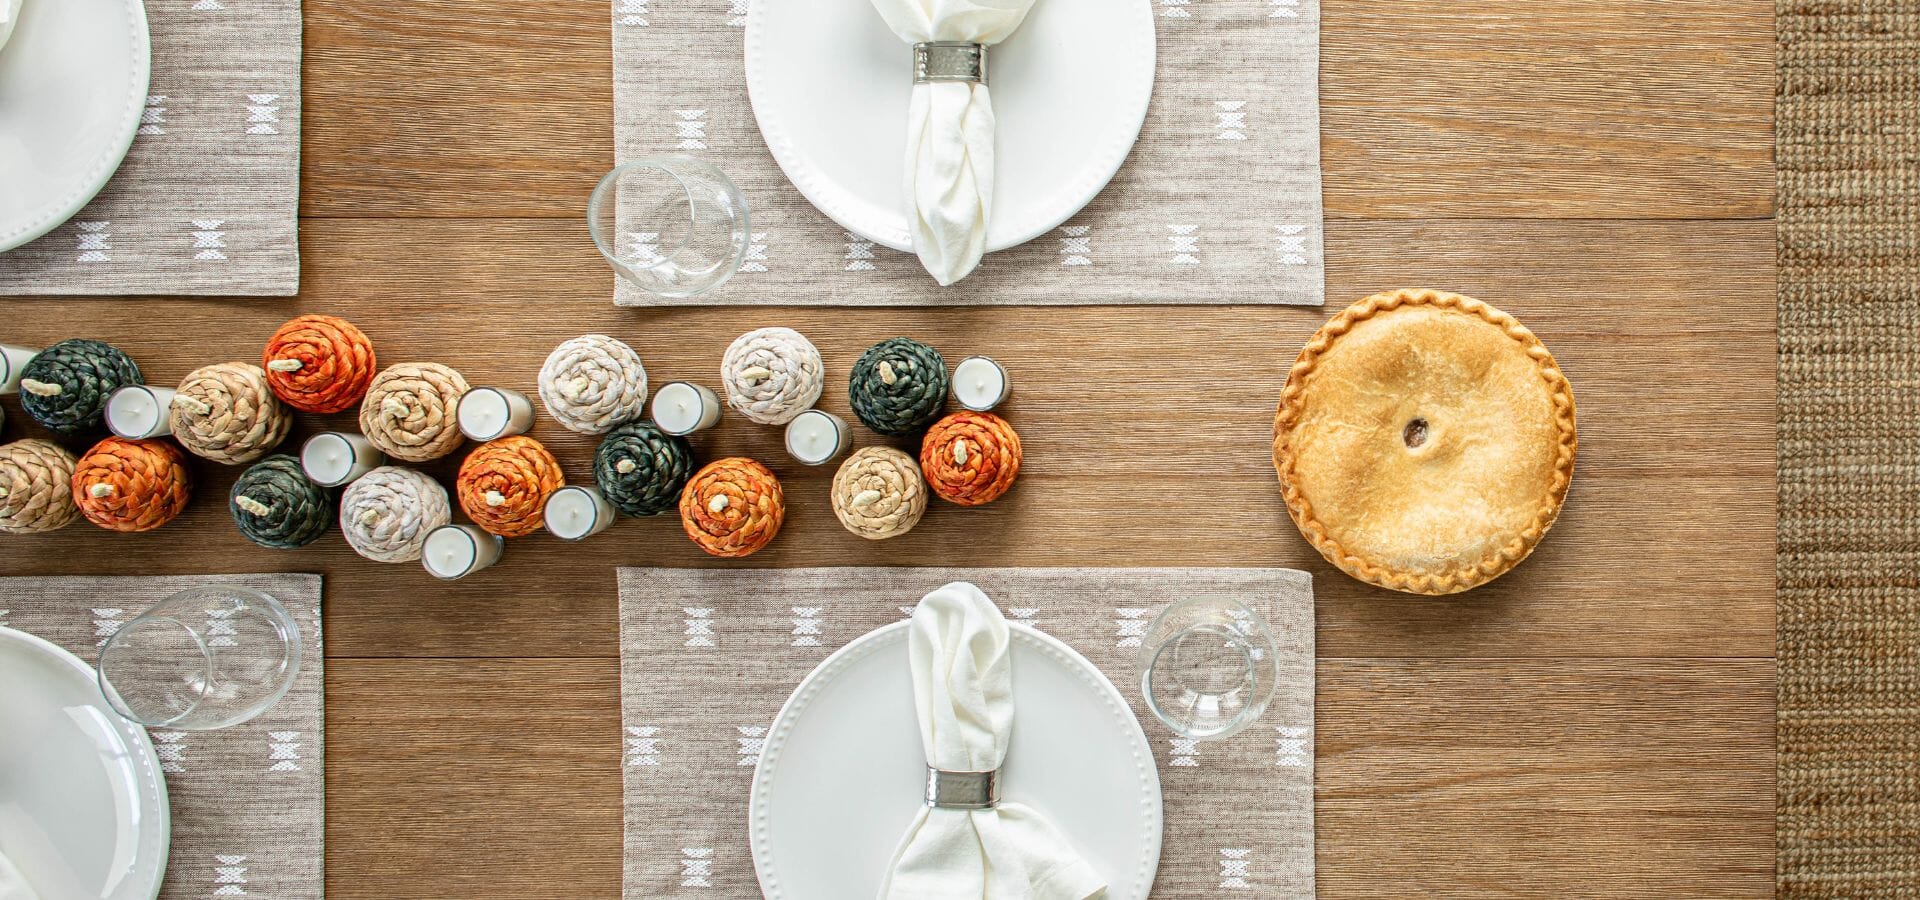 6 Best Tips for Hosting Thanksgiving Dinner